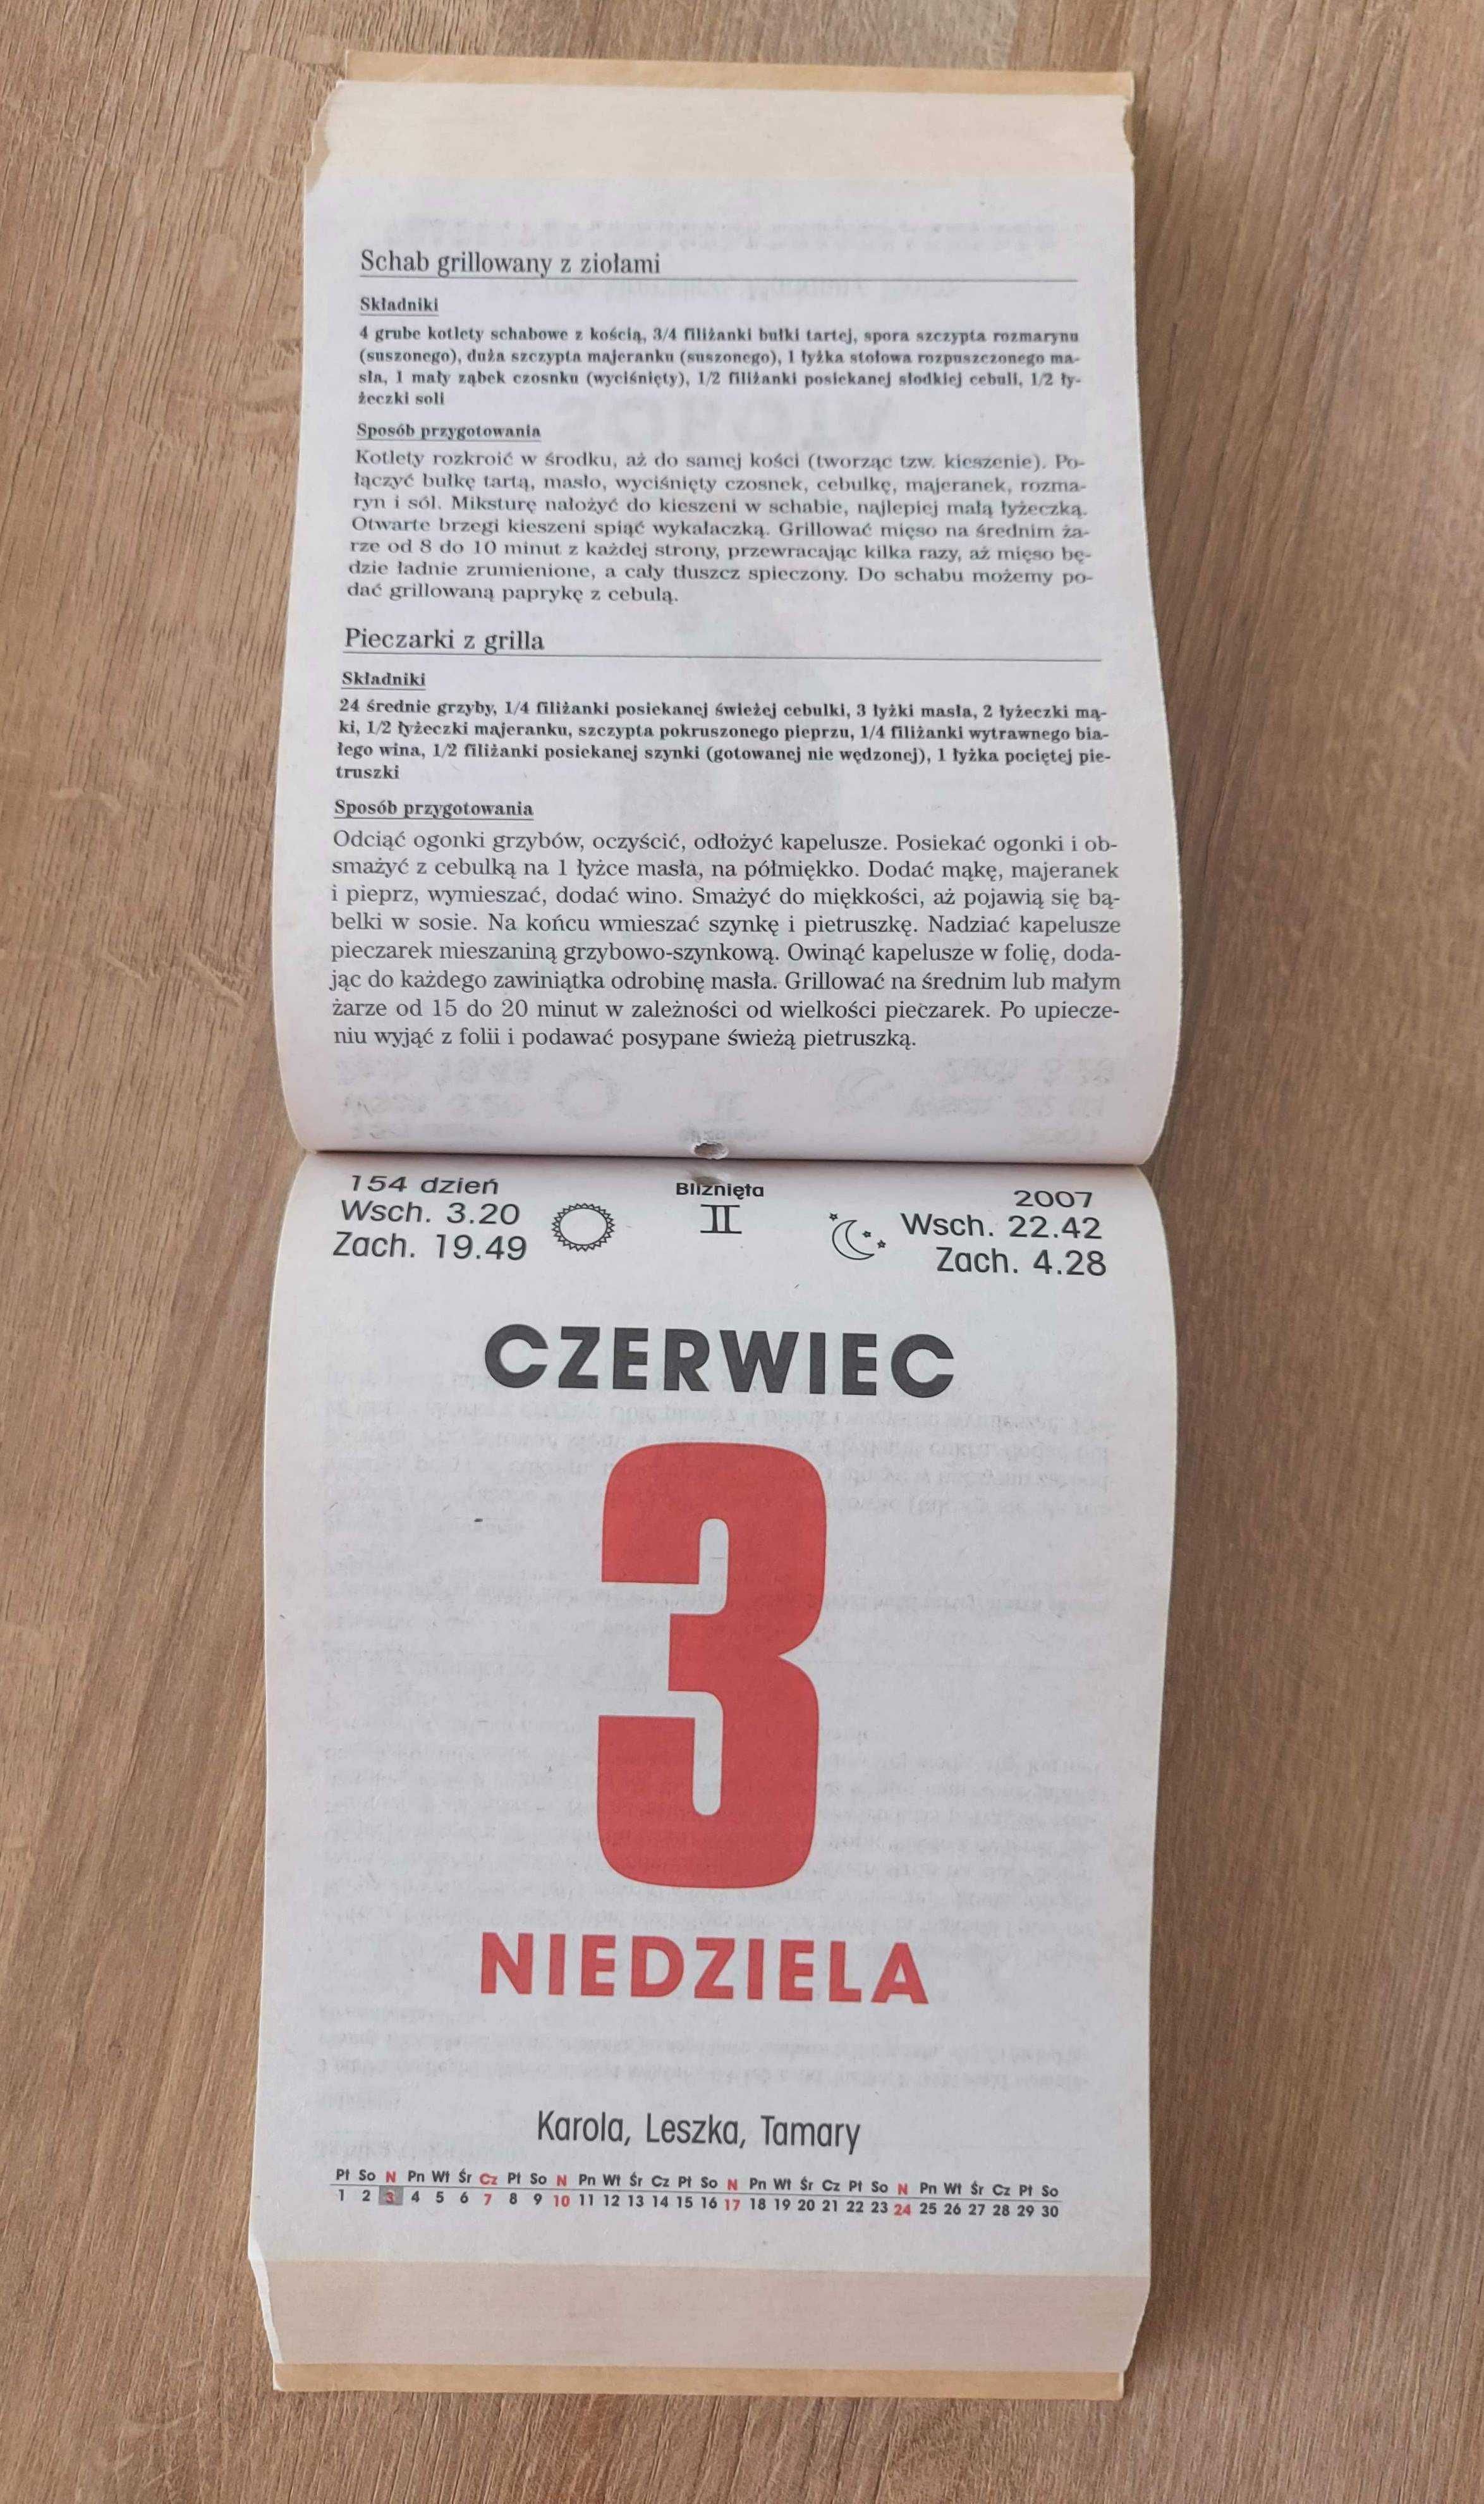 Kalendarz zdzierak „Kuchnia Polska” 2007 r. – nieużywany